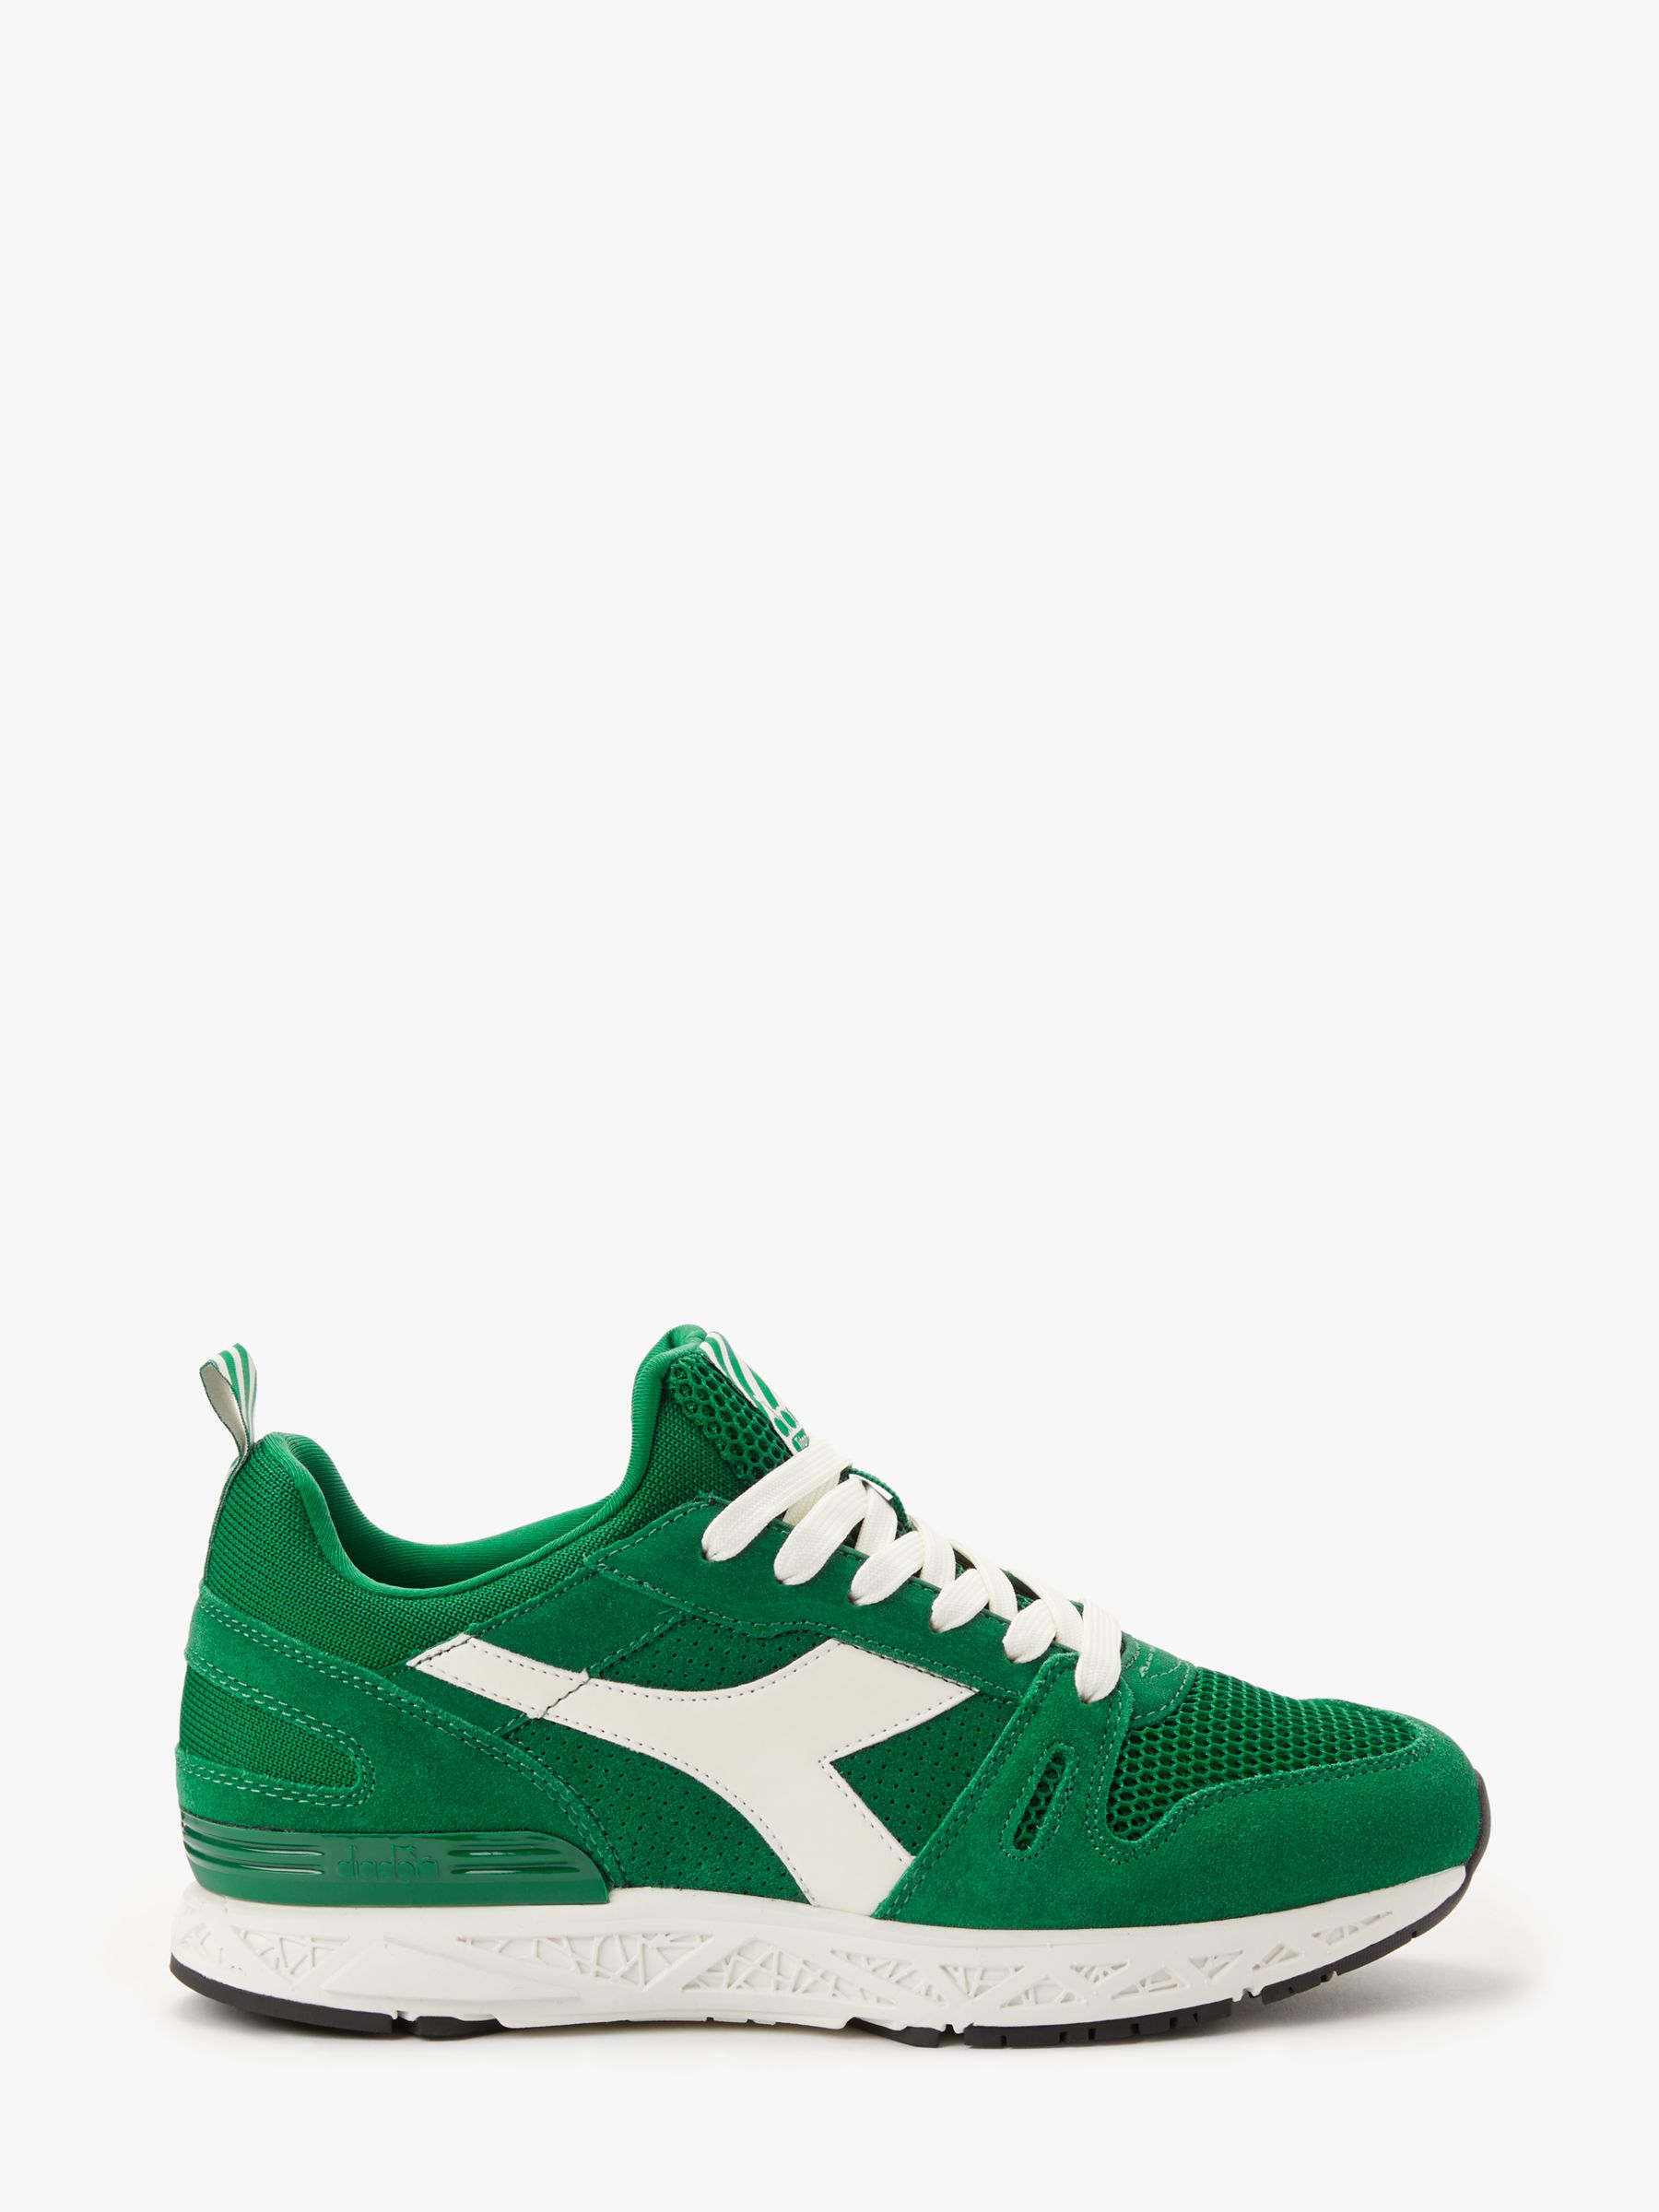 green diadora shoes